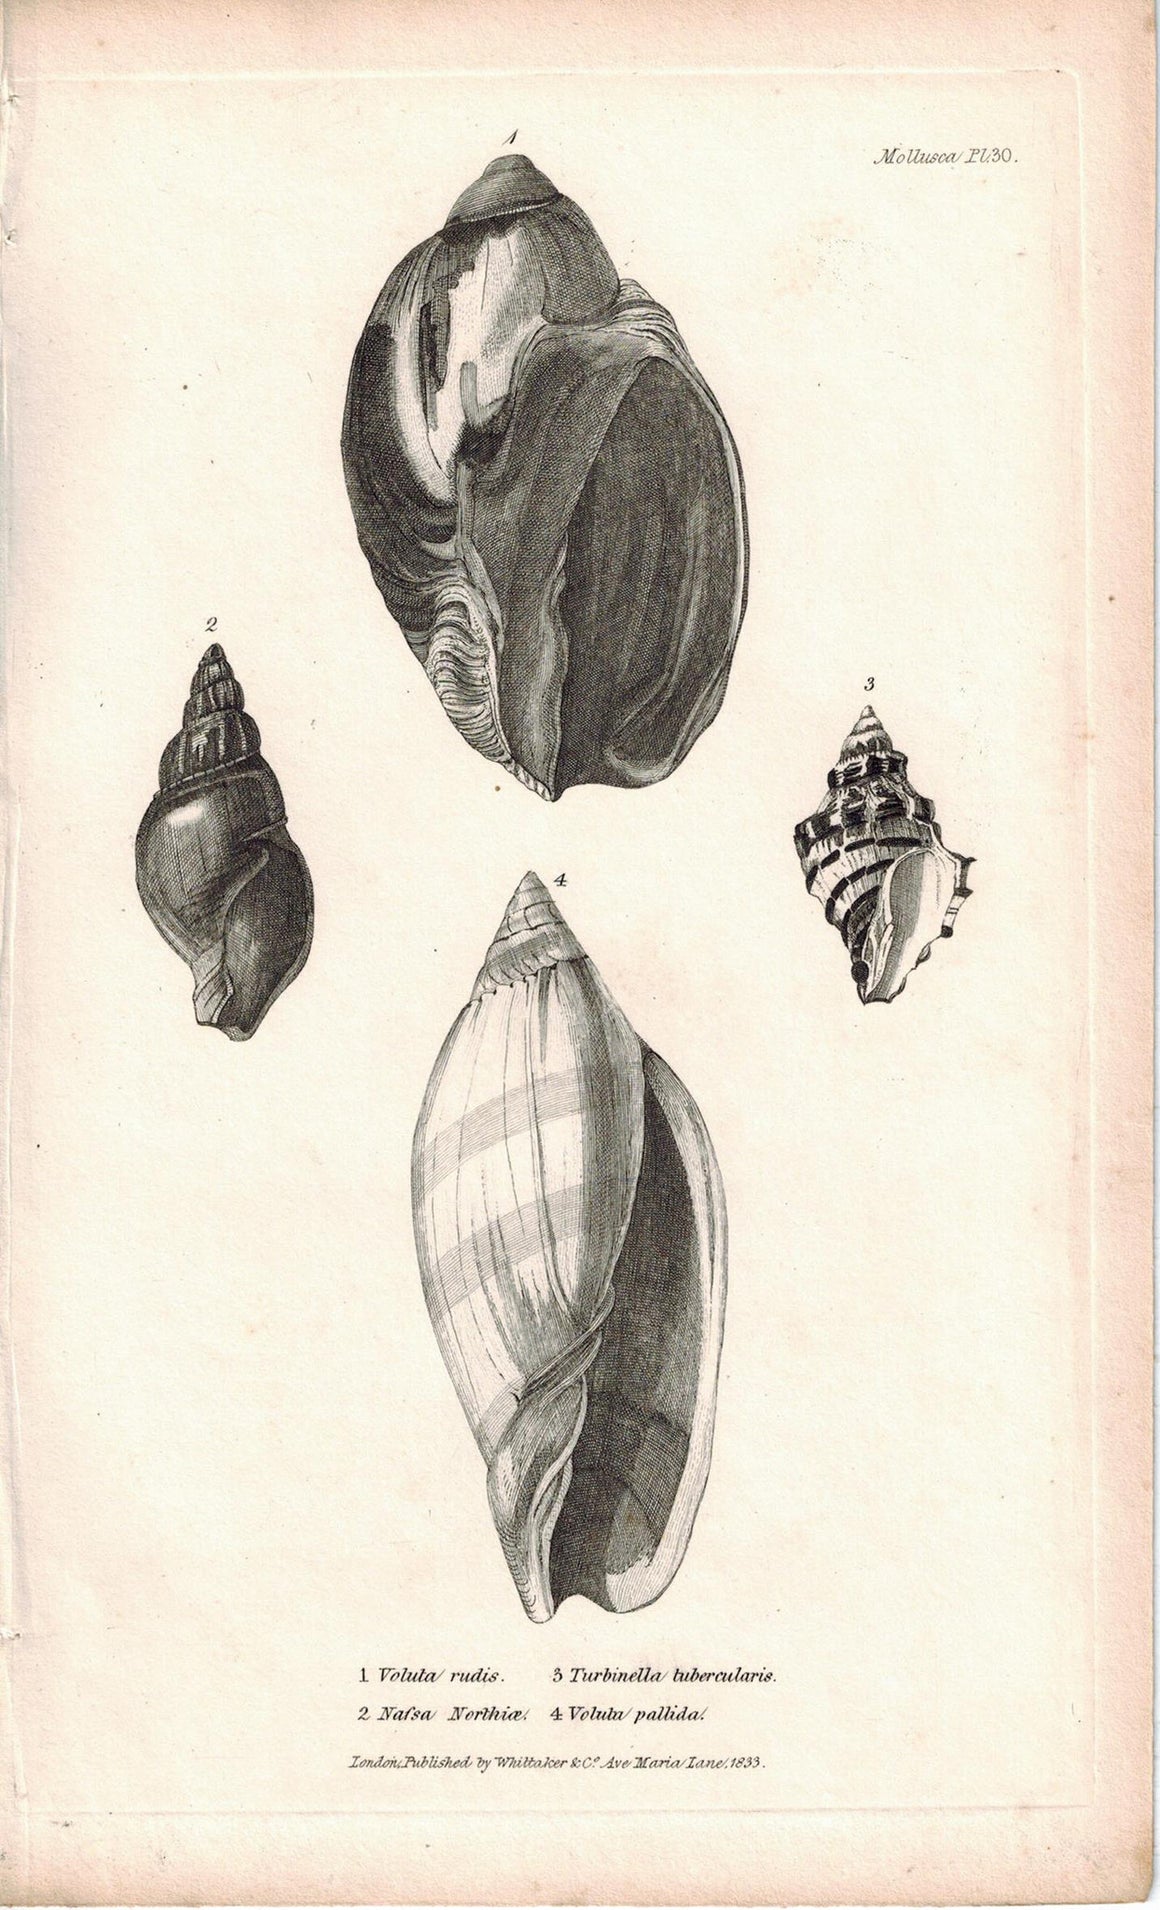 Sea Shell Mollusca Antique cuvier Print 1834 Pl 30